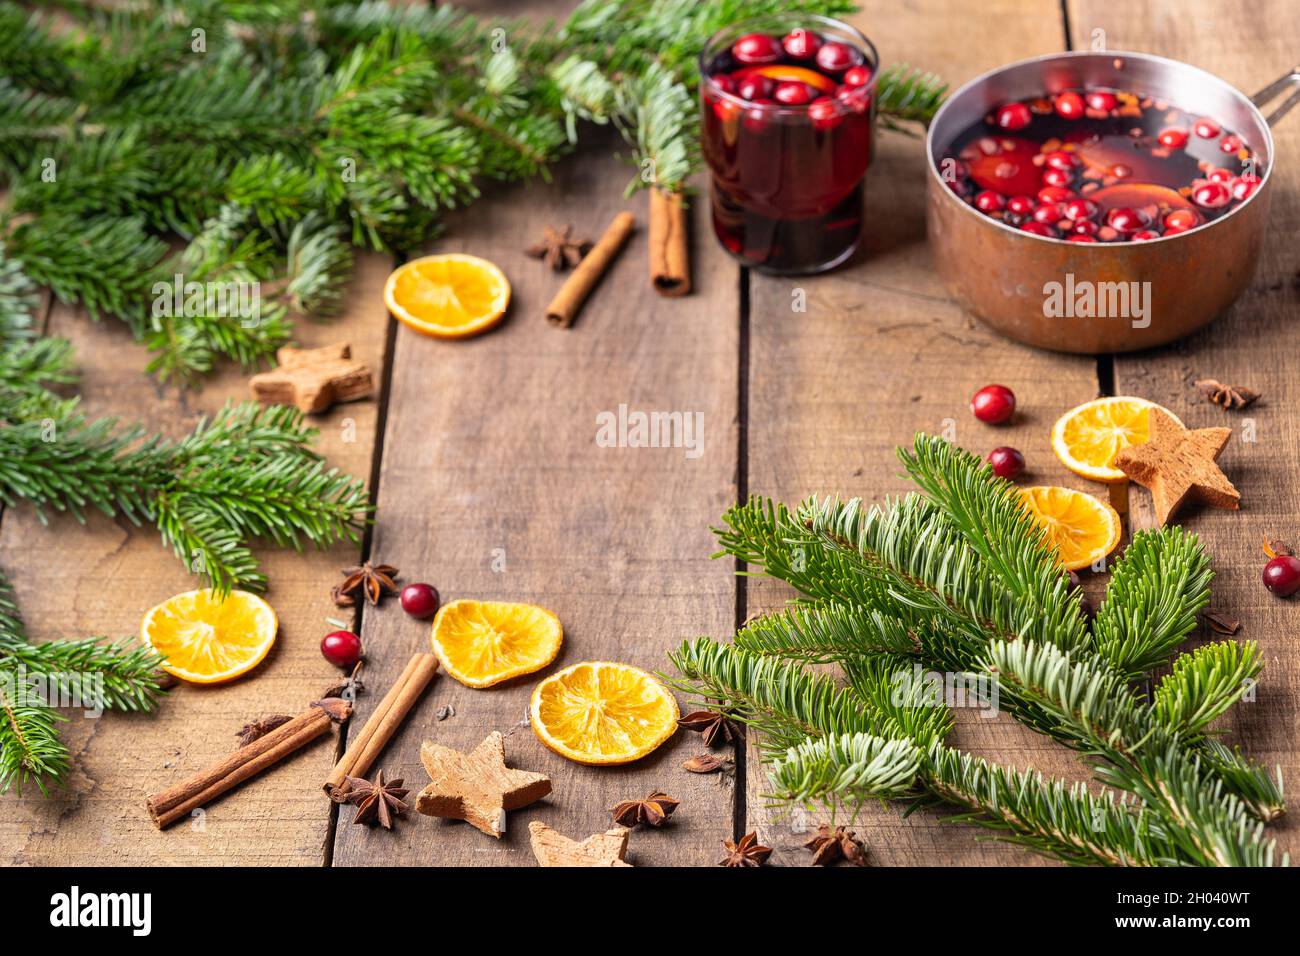 Vin chaud chaud chaud à base de vin rouge, de baies et d'oranges.Cadre de branches d'arbre de Noël, décoration pour le nouvel an et Noël Banque D'Images